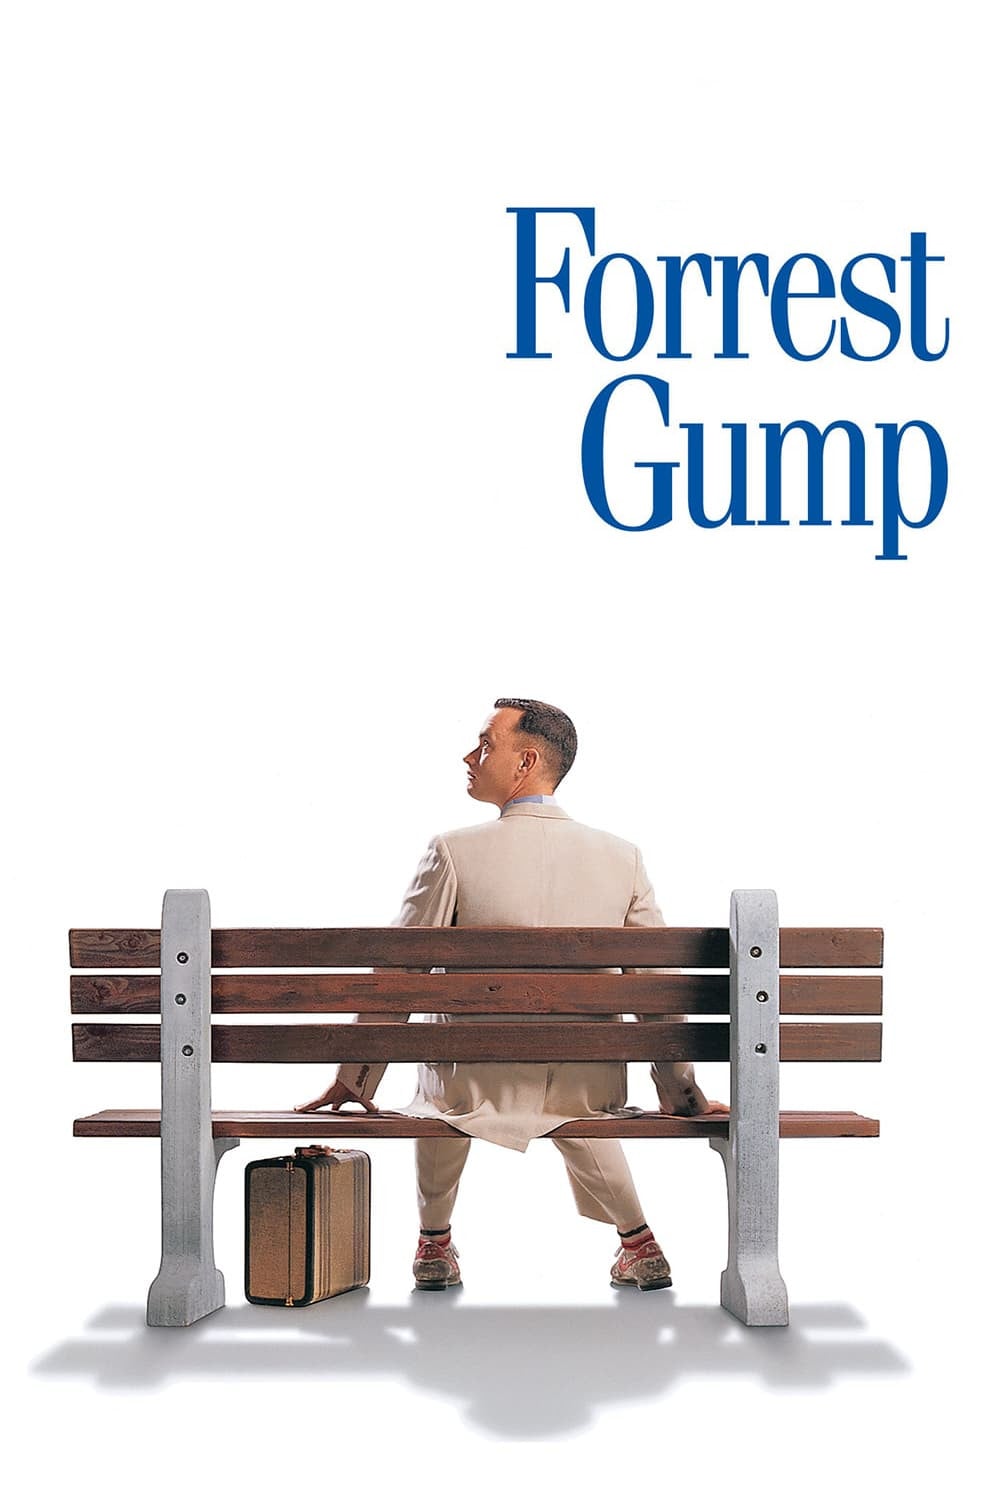 Caratula de FORREST GUMP (Forrest Gump) 